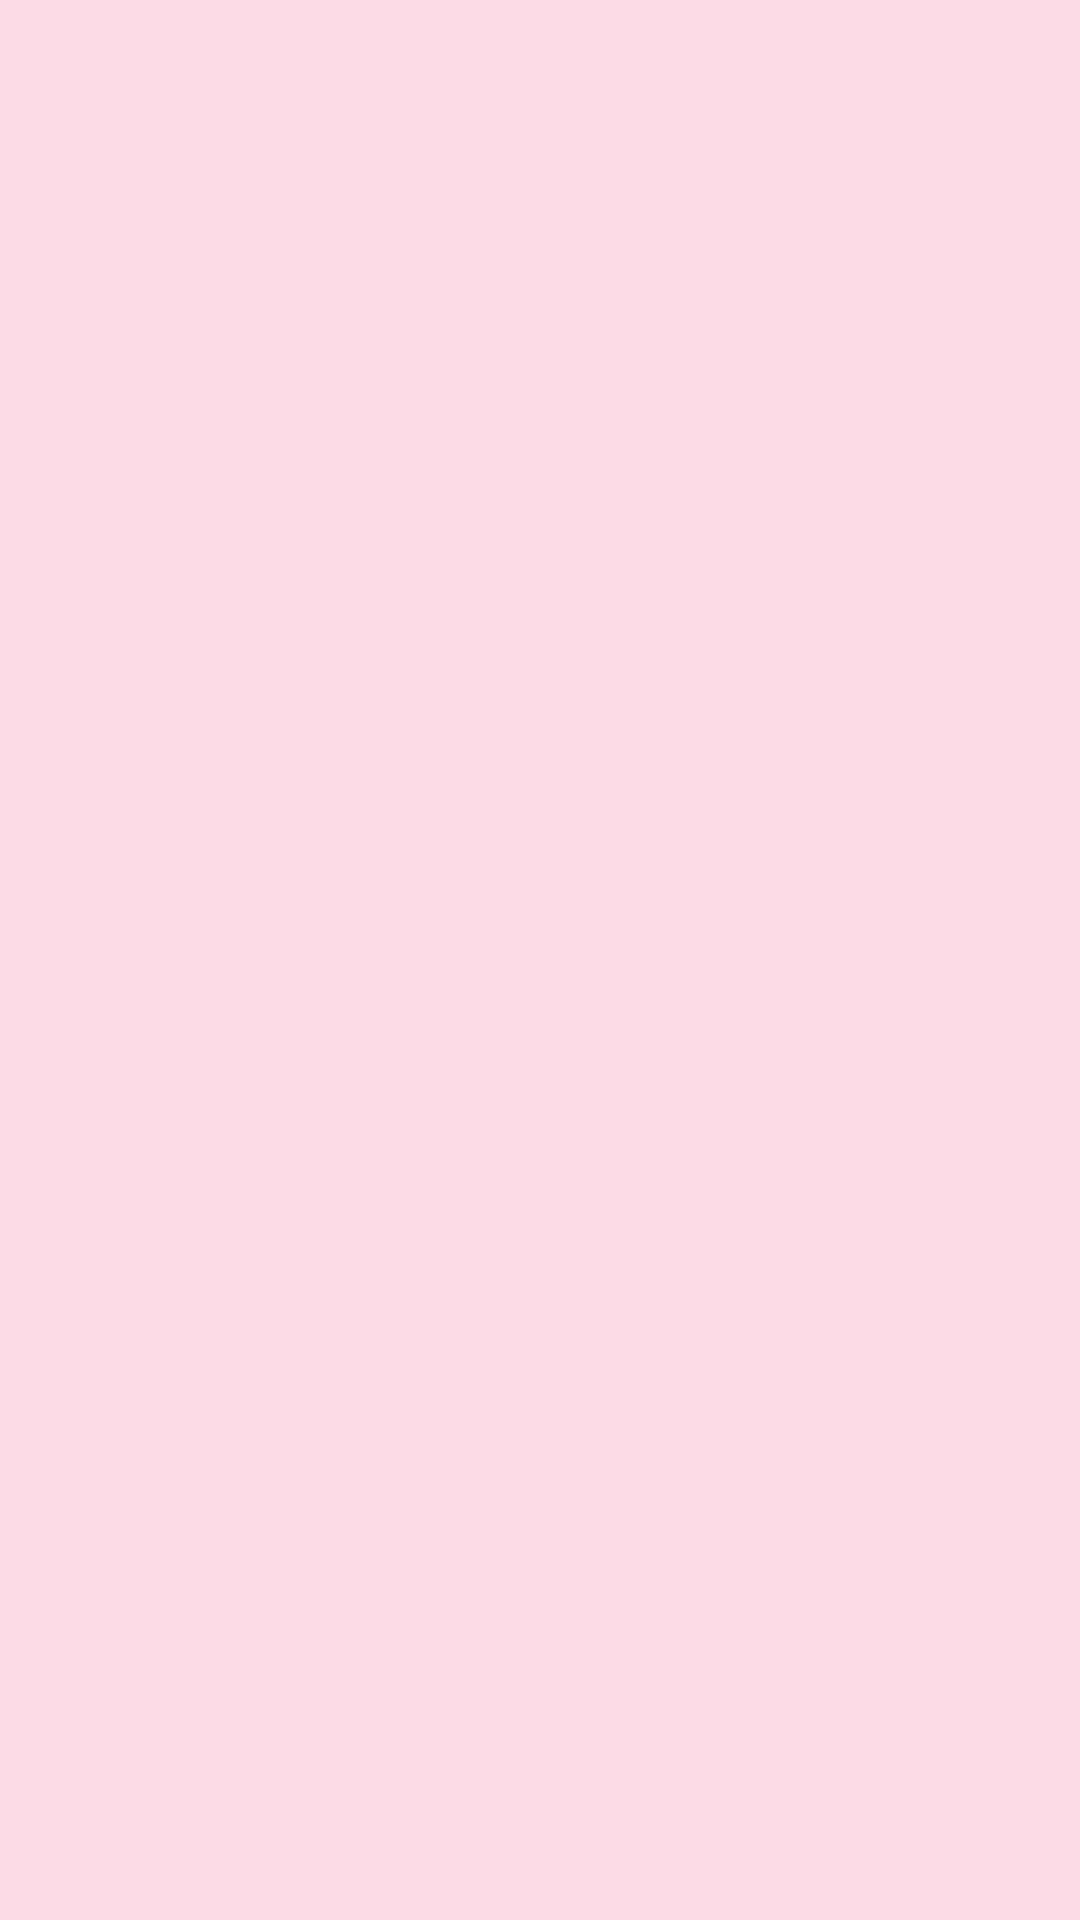 Pale Pink Wallpapers - Top Những Hình Ảnh Đẹp